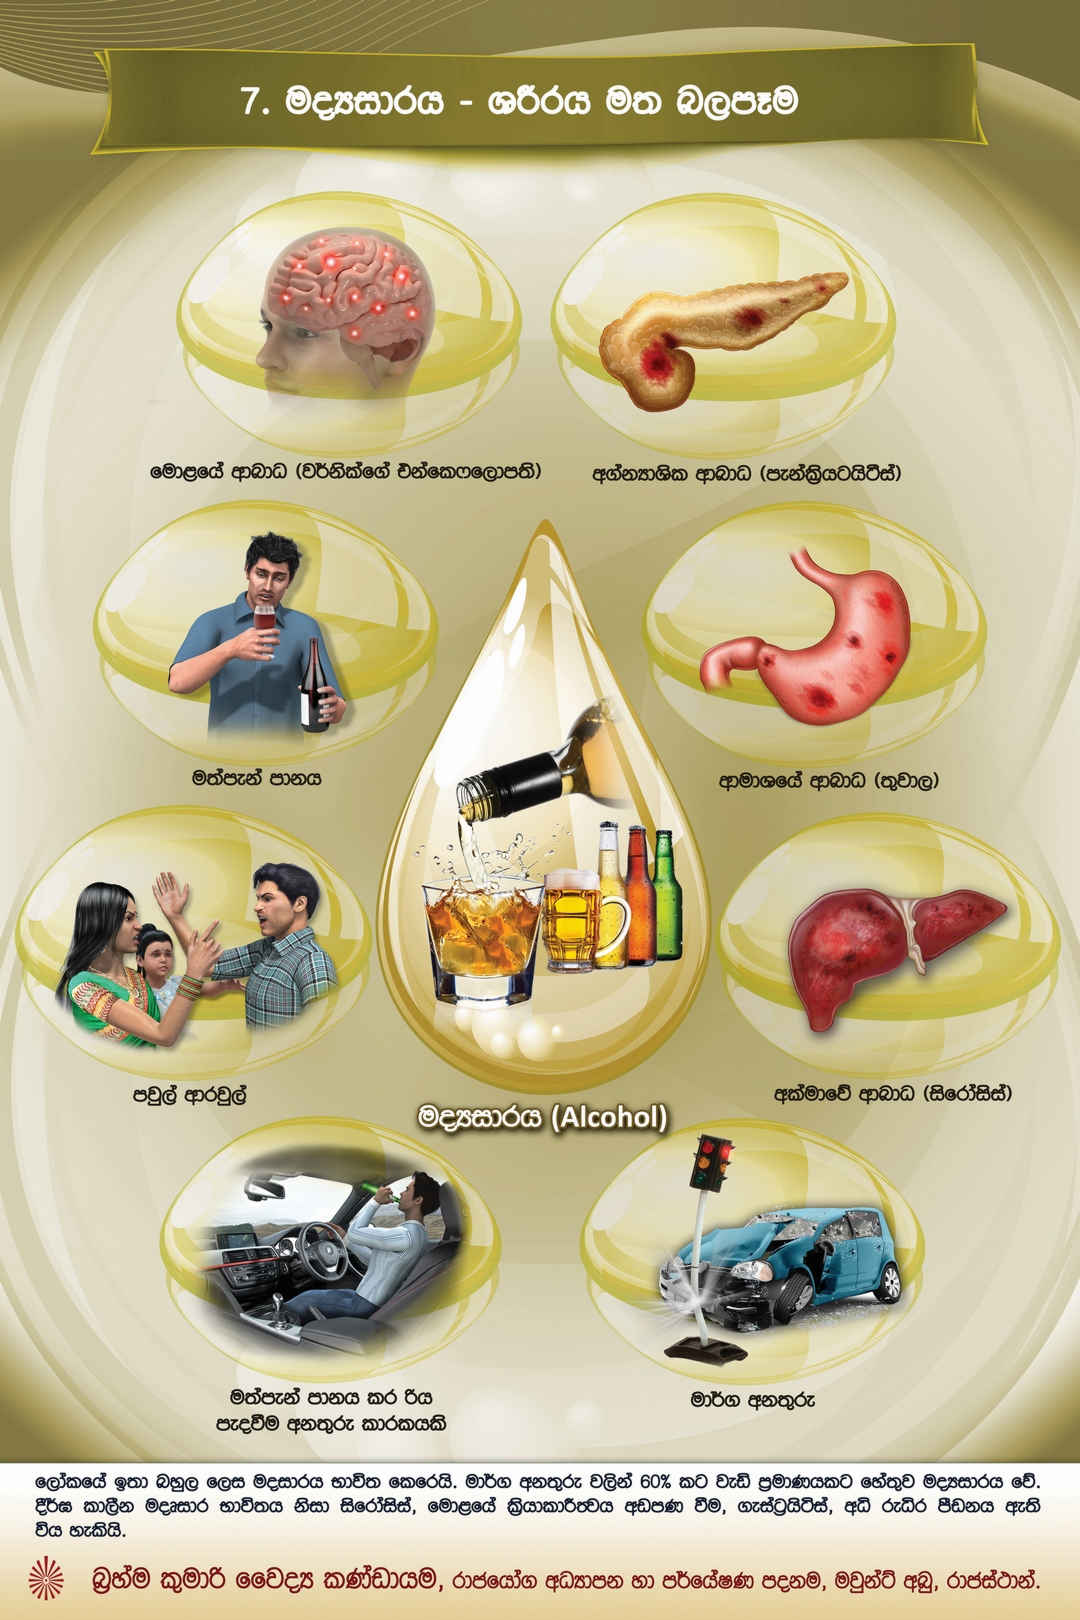 Drug De-addiction - Alcohol (Sinhala)